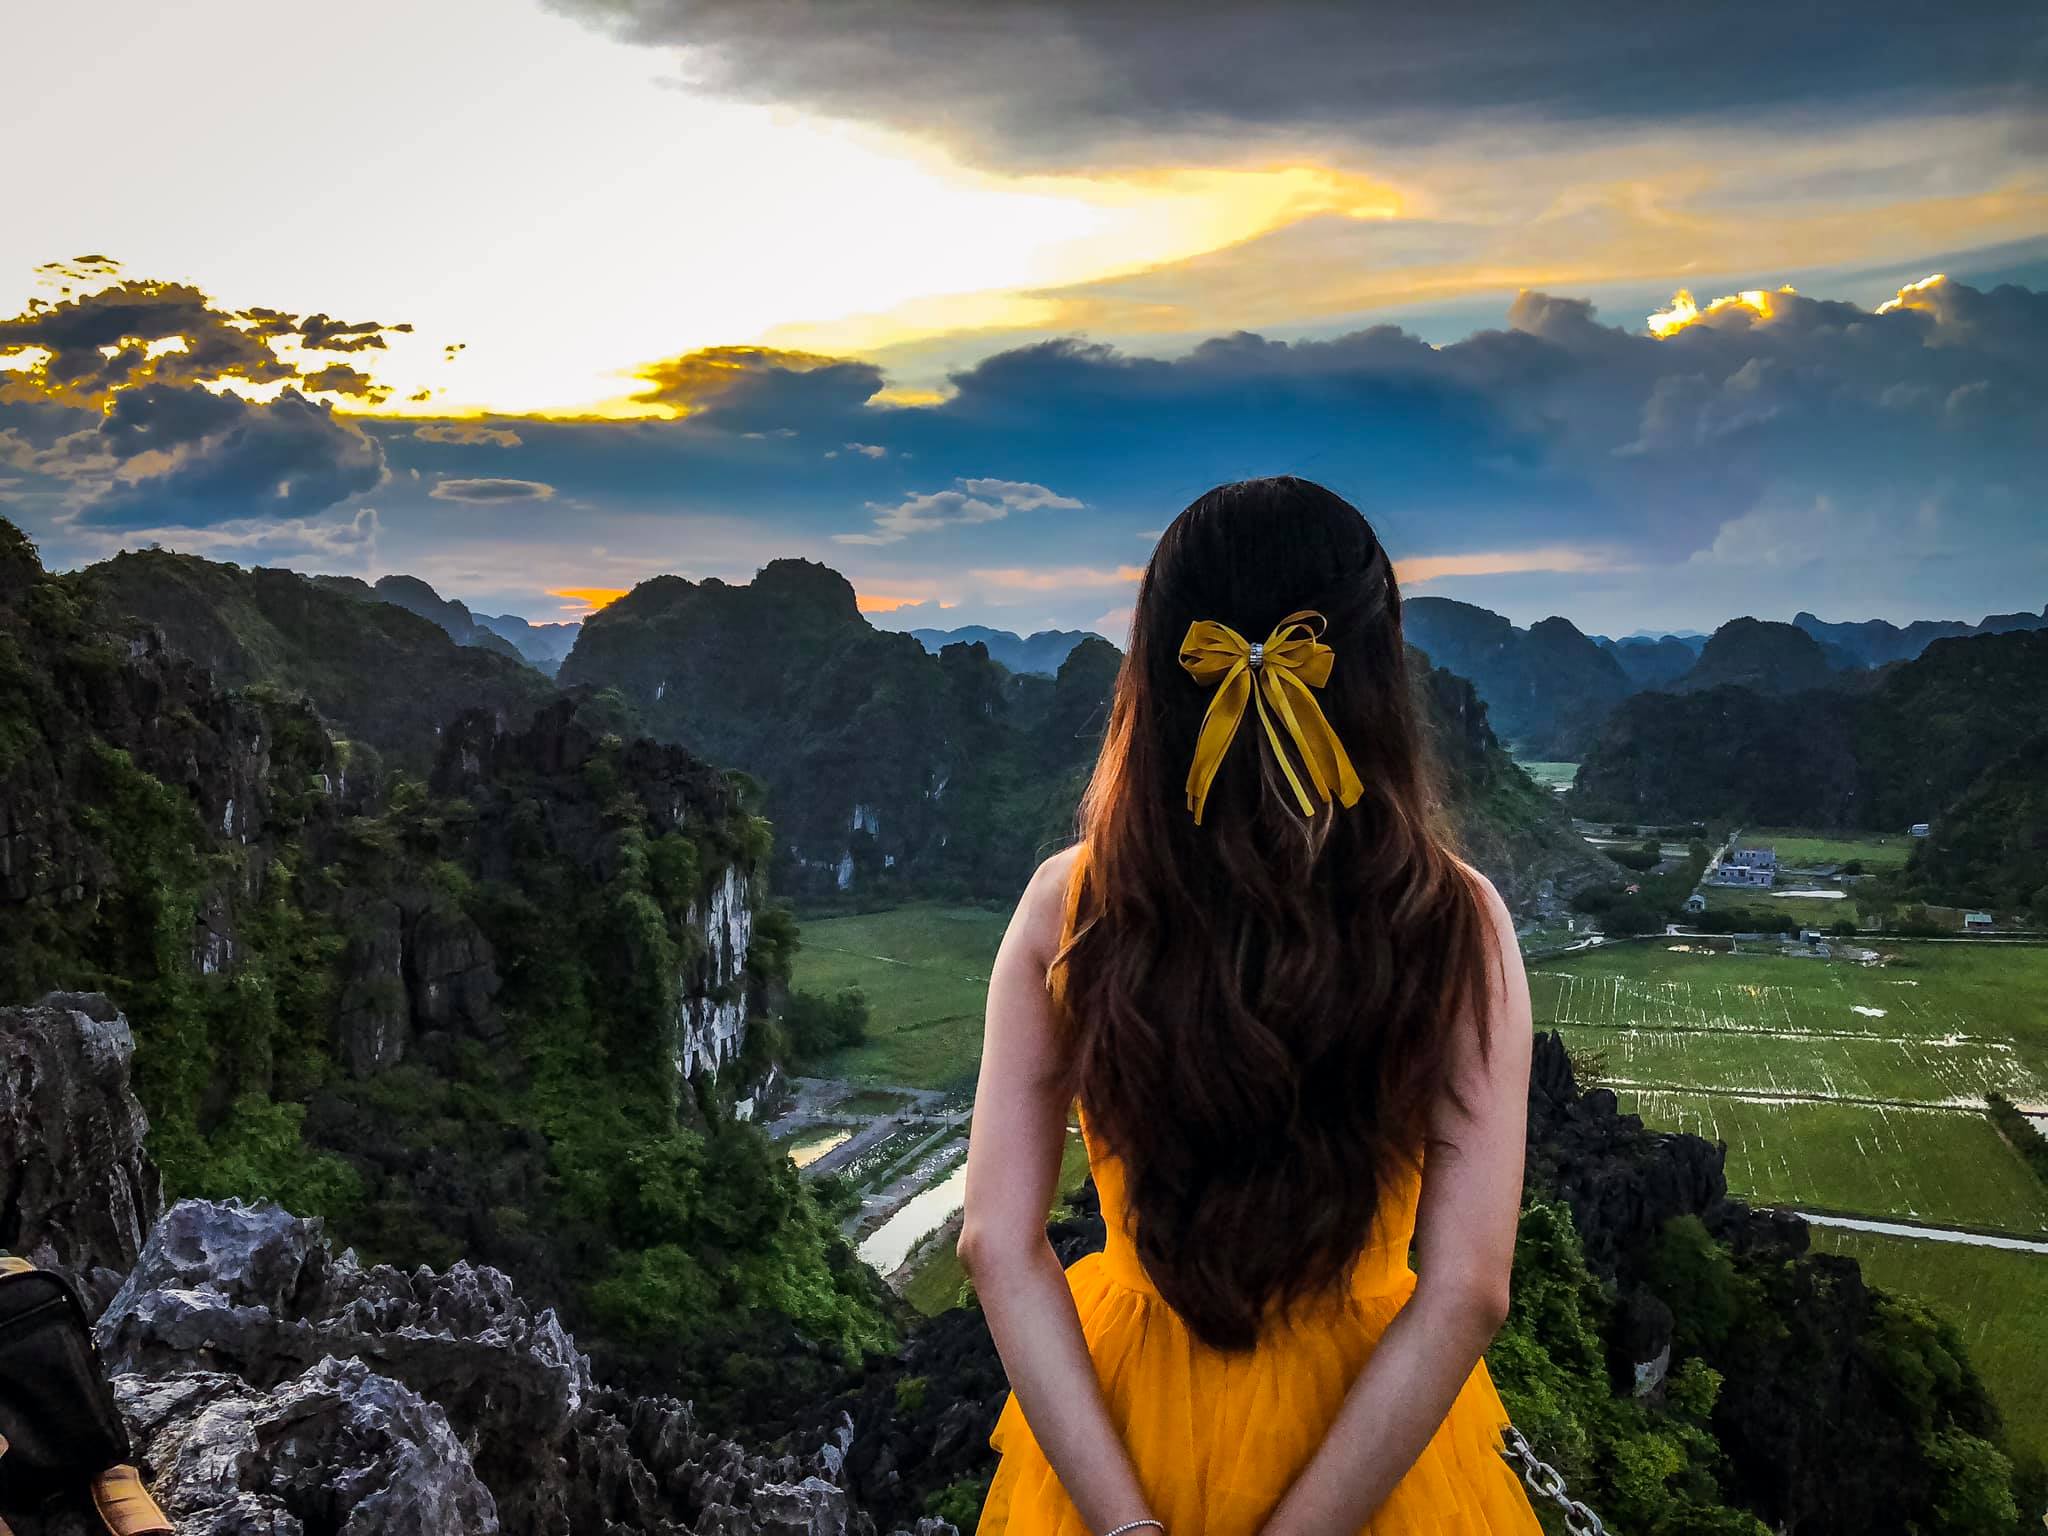 Những bức ảnh du lịch Ninh Bình sẽ khiến bạn say đắm, đưa bạn vào một thế giới tuyệt vời của thiên nhiên hoang sơ, rặng núi và đầm lầy. Hãy cùng khám phá những cảnh đẹp tuyệt vời này và tìm hiểu thêm về lịch sử và văn hóa của đất nước Việt Nam.